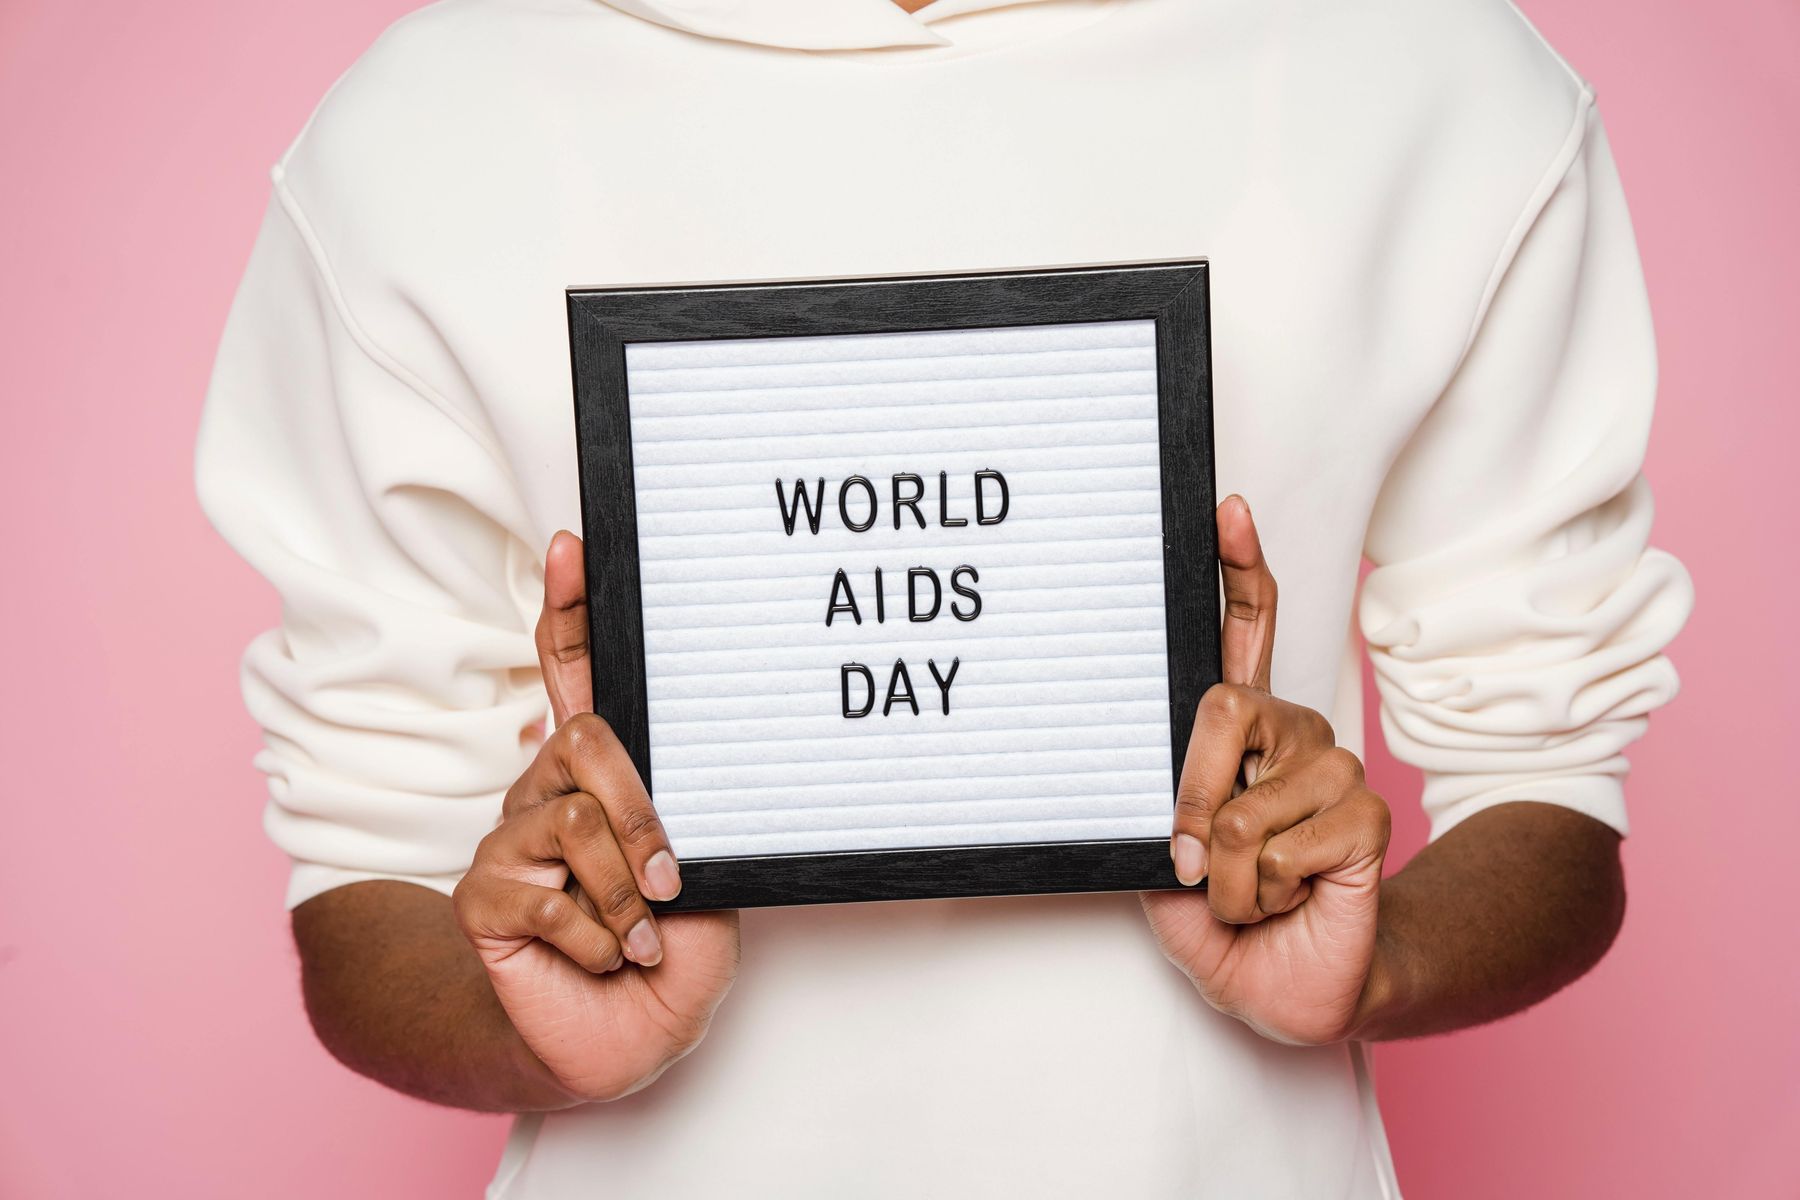 Seit 1988 begehen die WHO und die United Nations am 1.Dezember den World AIDS Day.